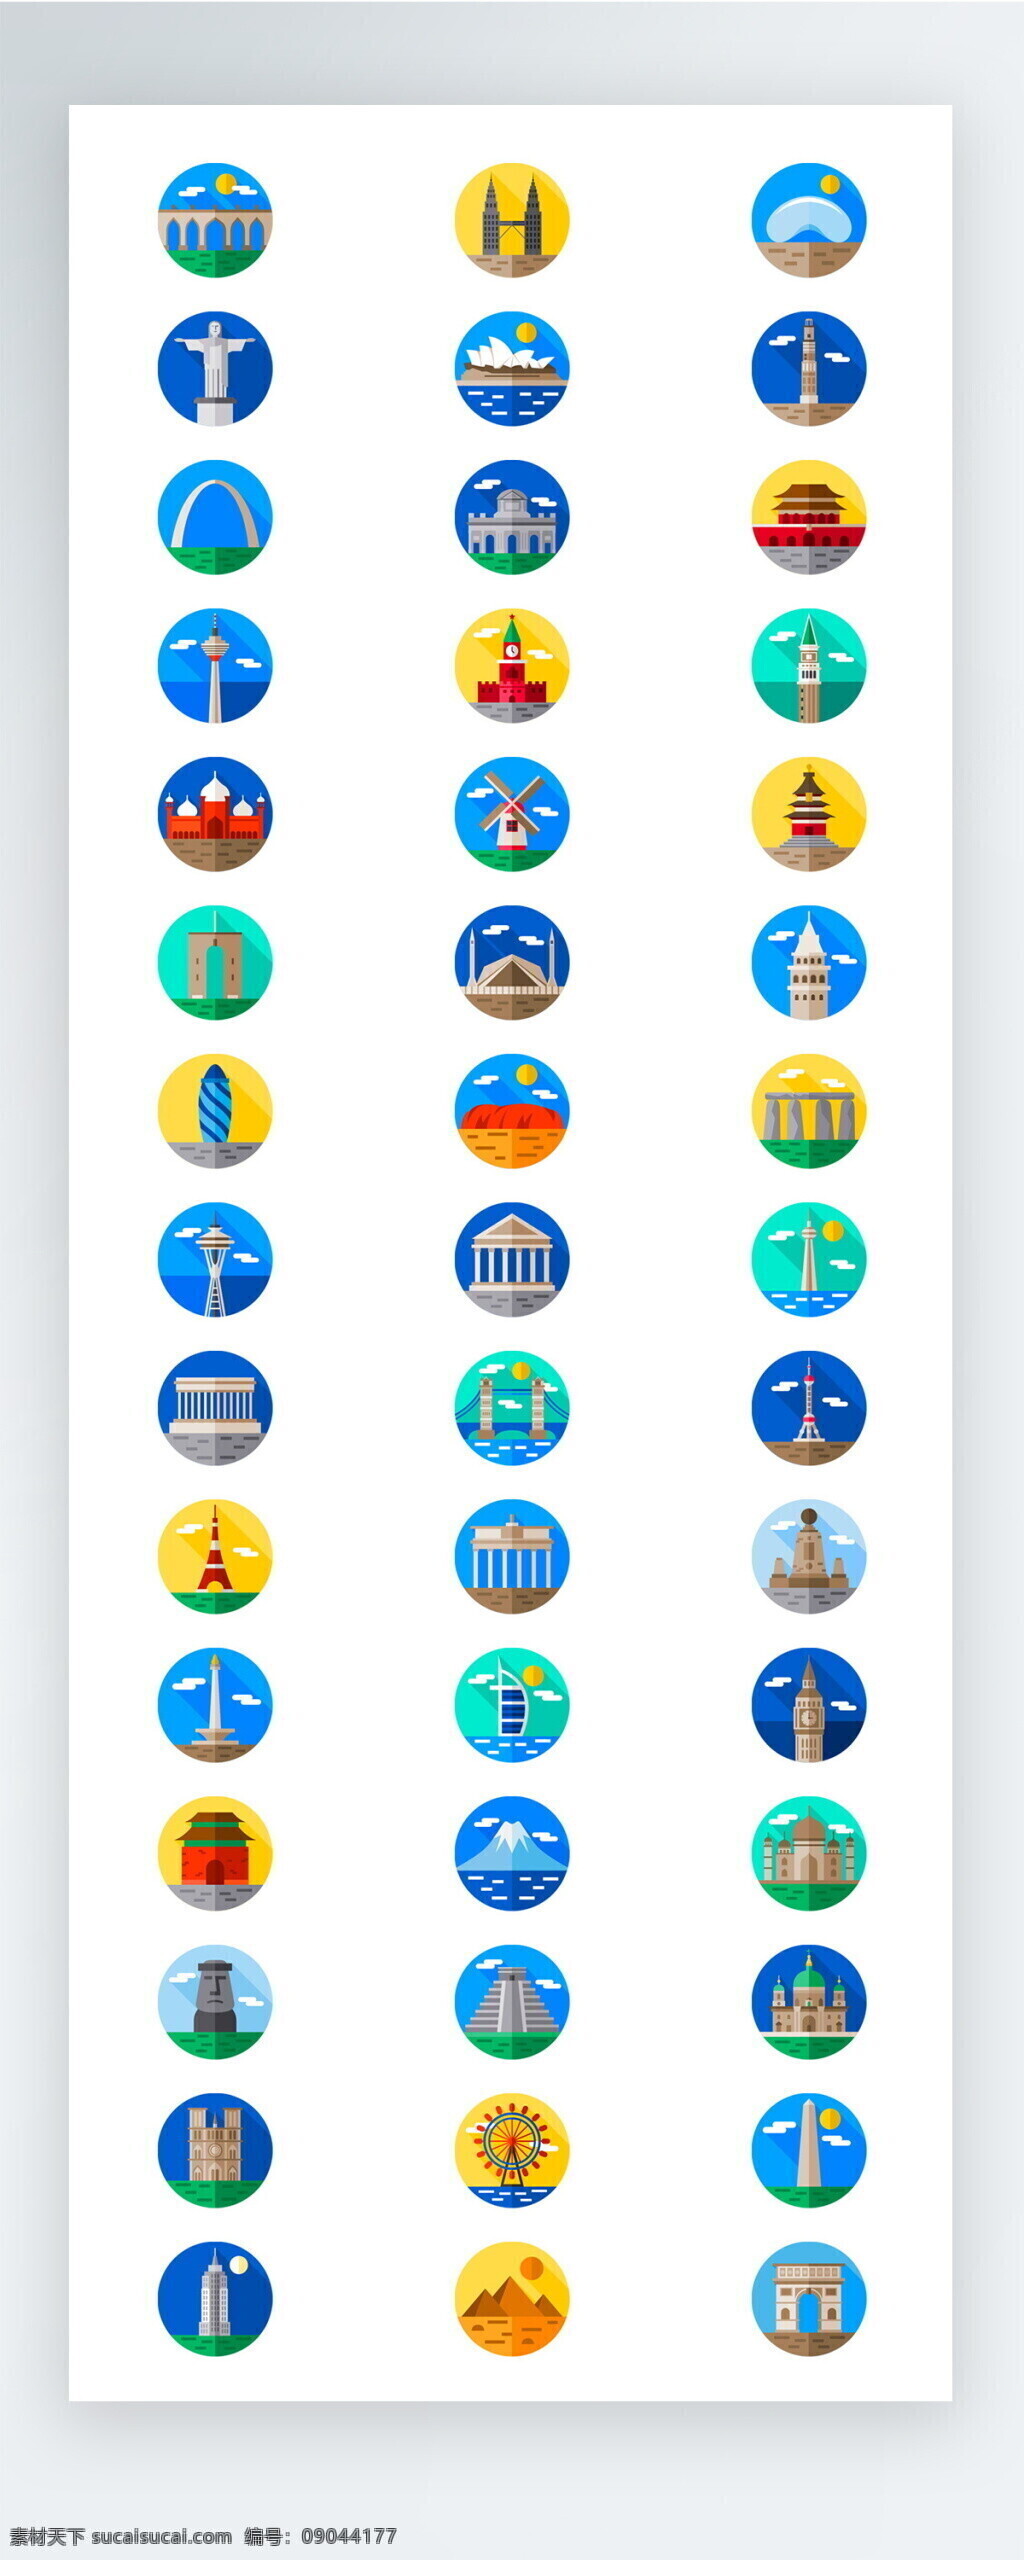 彩色 旅游出行 景点 图标 矢量 icon icon图标 ui 手机 拟物 出行 旅游 度假 休闲 娱乐